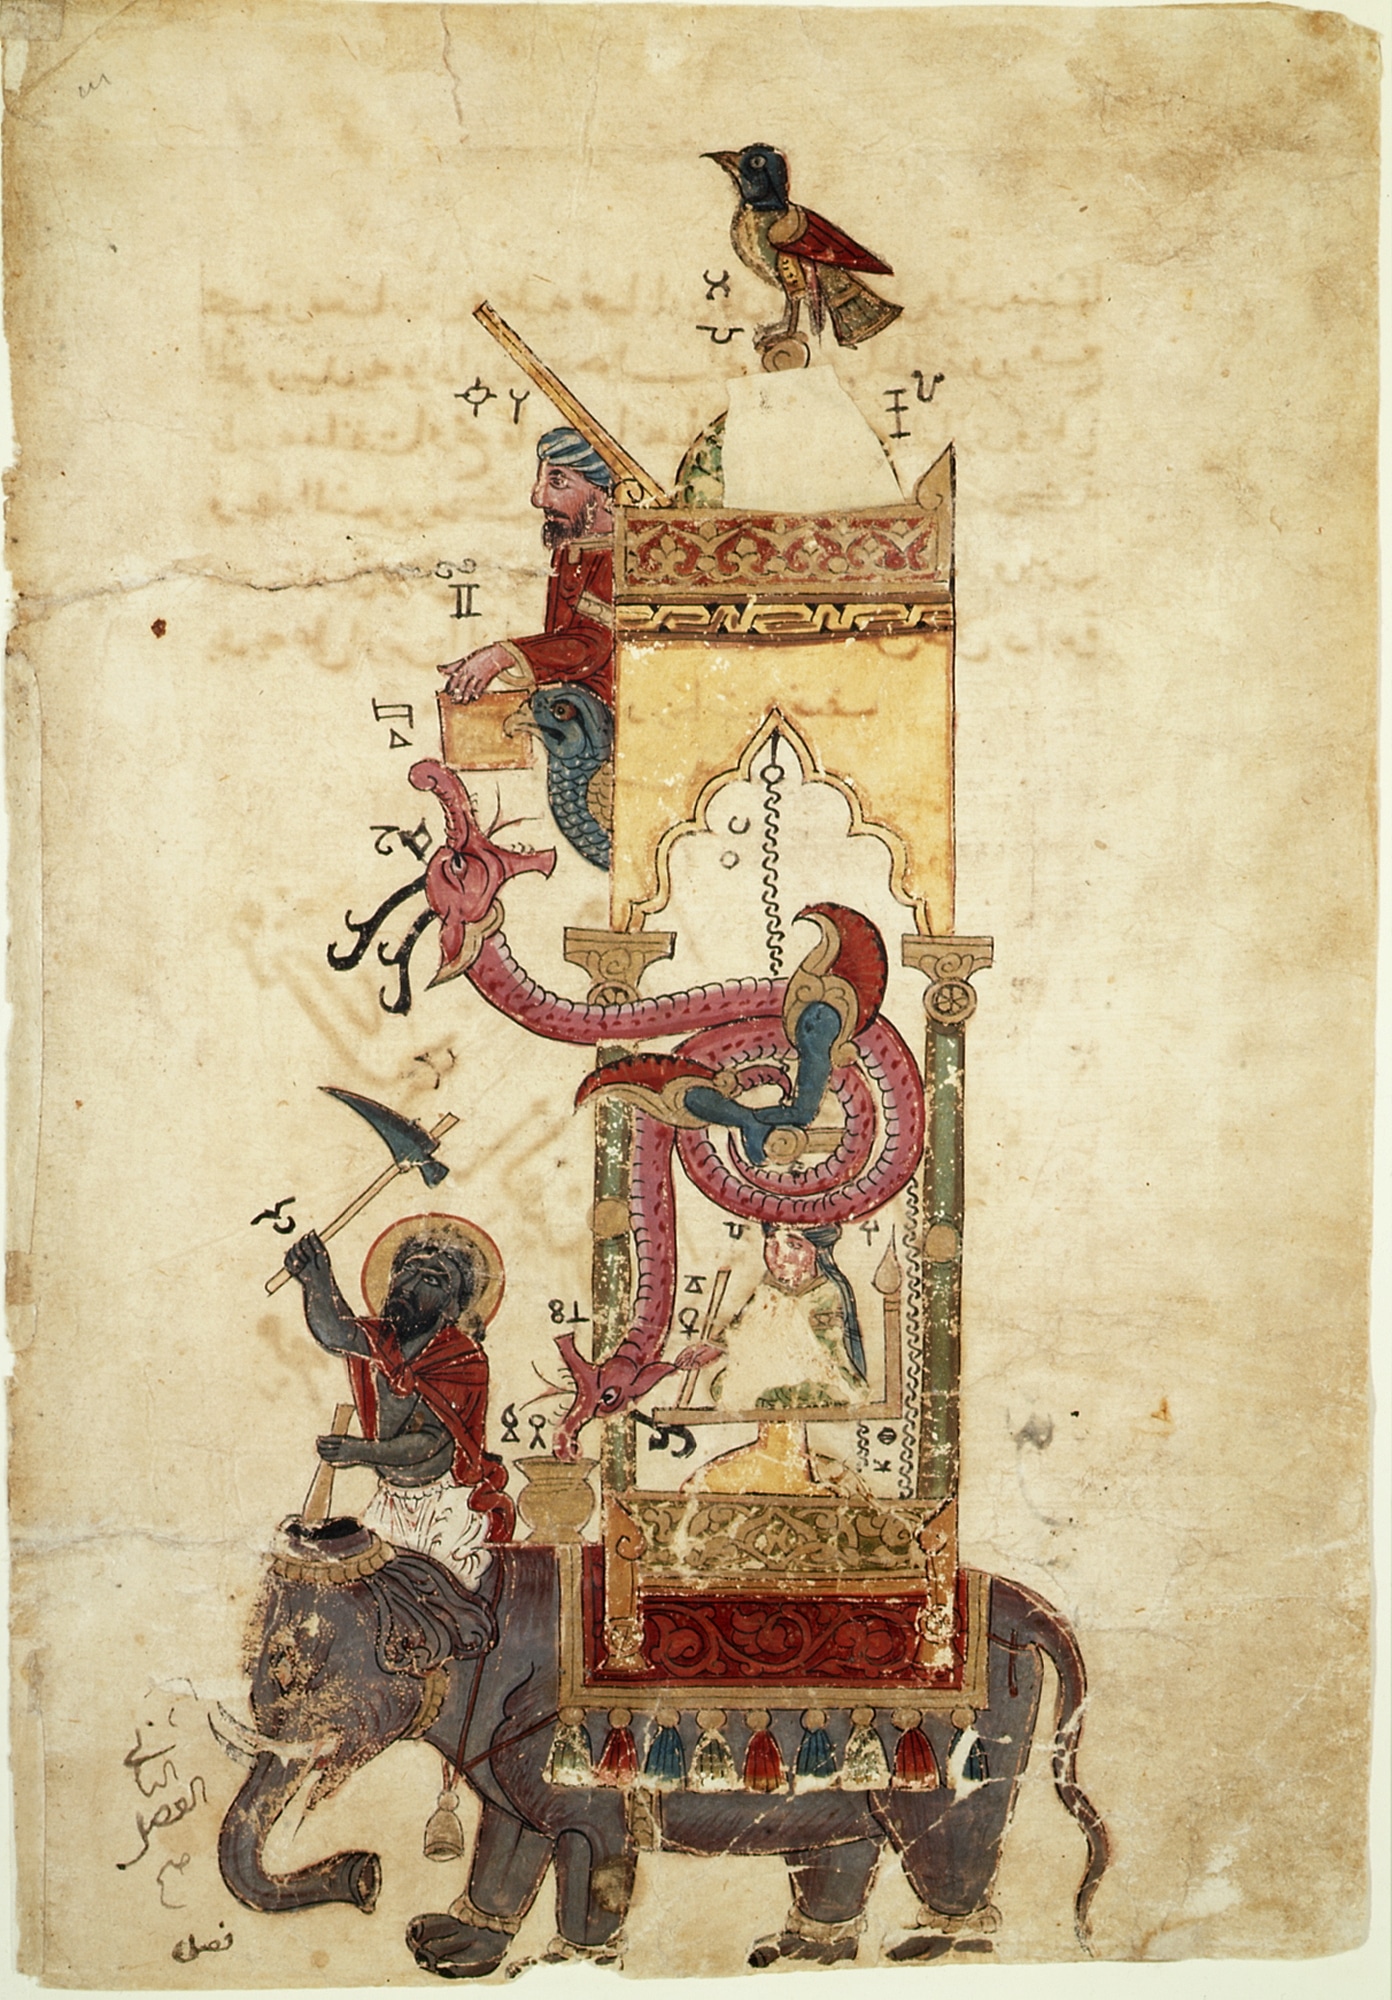 horloge-automate-histoire-al-jazari-elephant